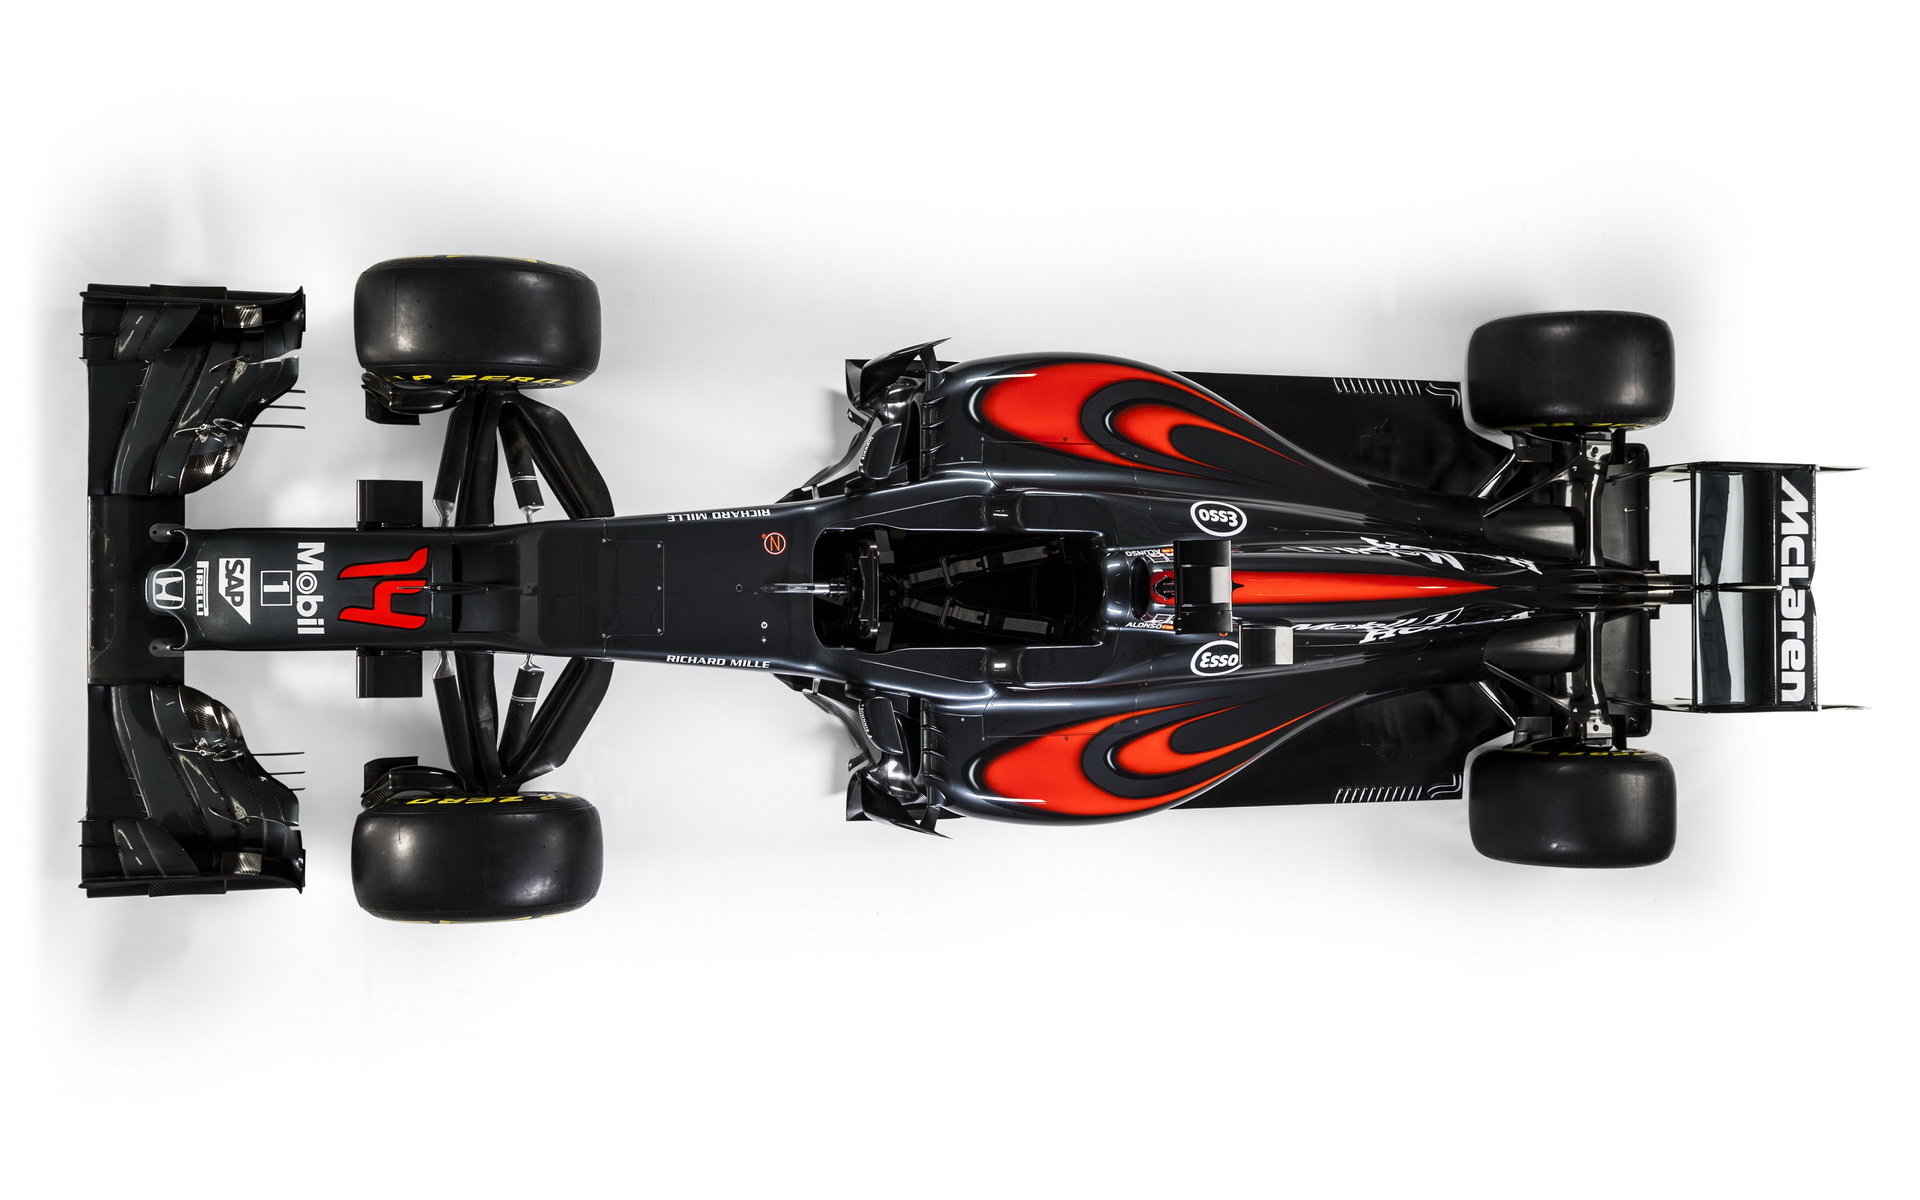 Nový vůz týmu McLaren: McLaren MP4-31 Honda